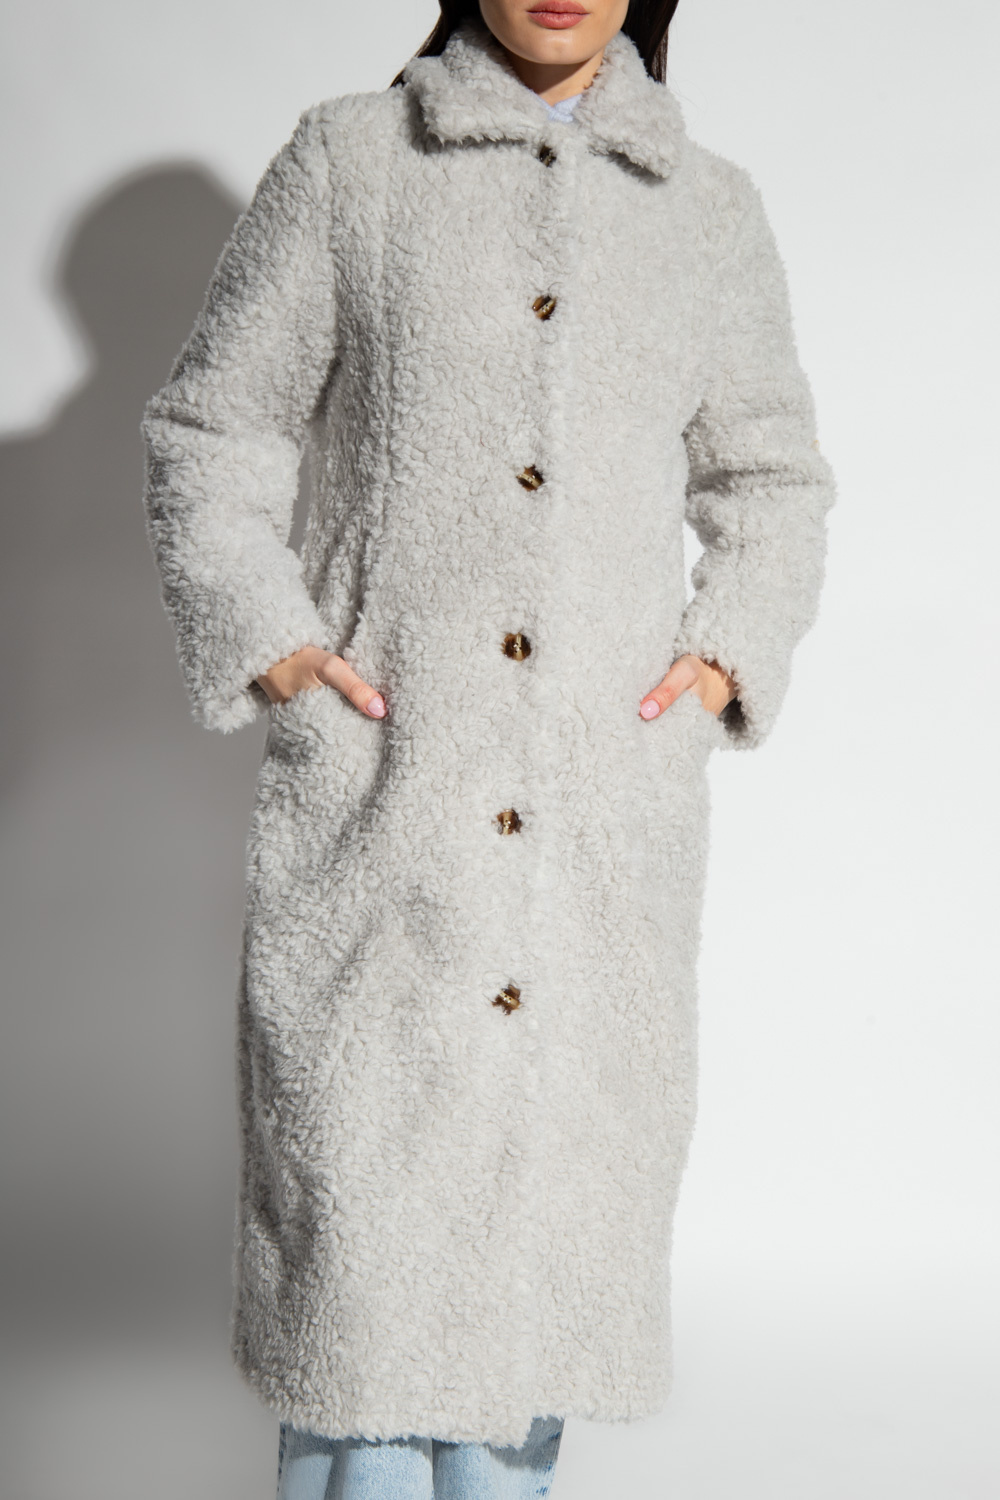 Samsøe Samsøe ‘Eloise’ wool coat